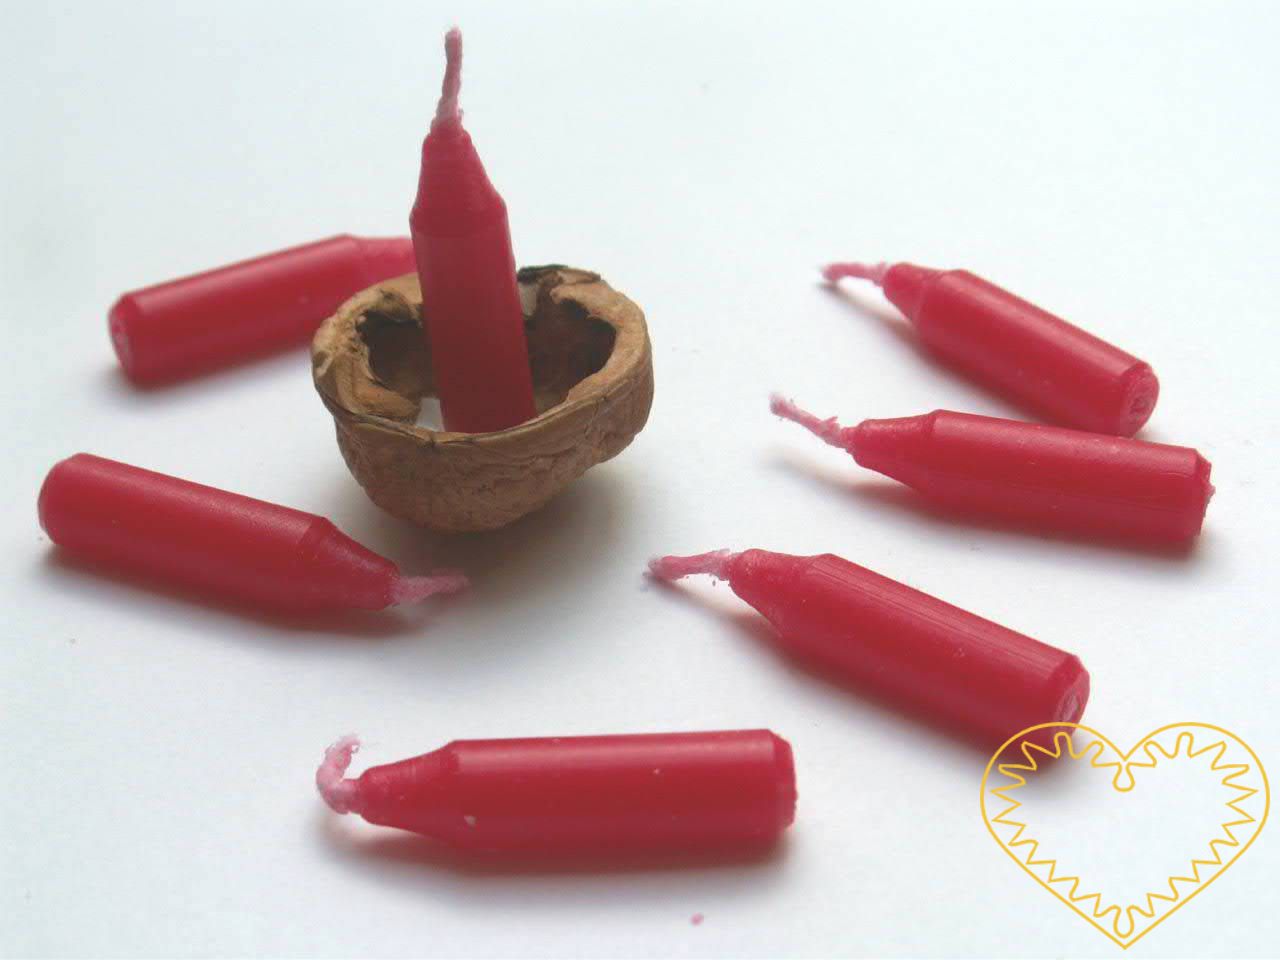 Speciální malé červené vánoční svíčky, které jsou svou velikostí uzpůsobeny na výrobu lodiček z ořechových skořápek. Pouštění skořápkových lodiček se zapálenými svíčičkami je staročeský zvyk, který se praktikuje o Štědrém večeru. Sleduje se, čí lodič